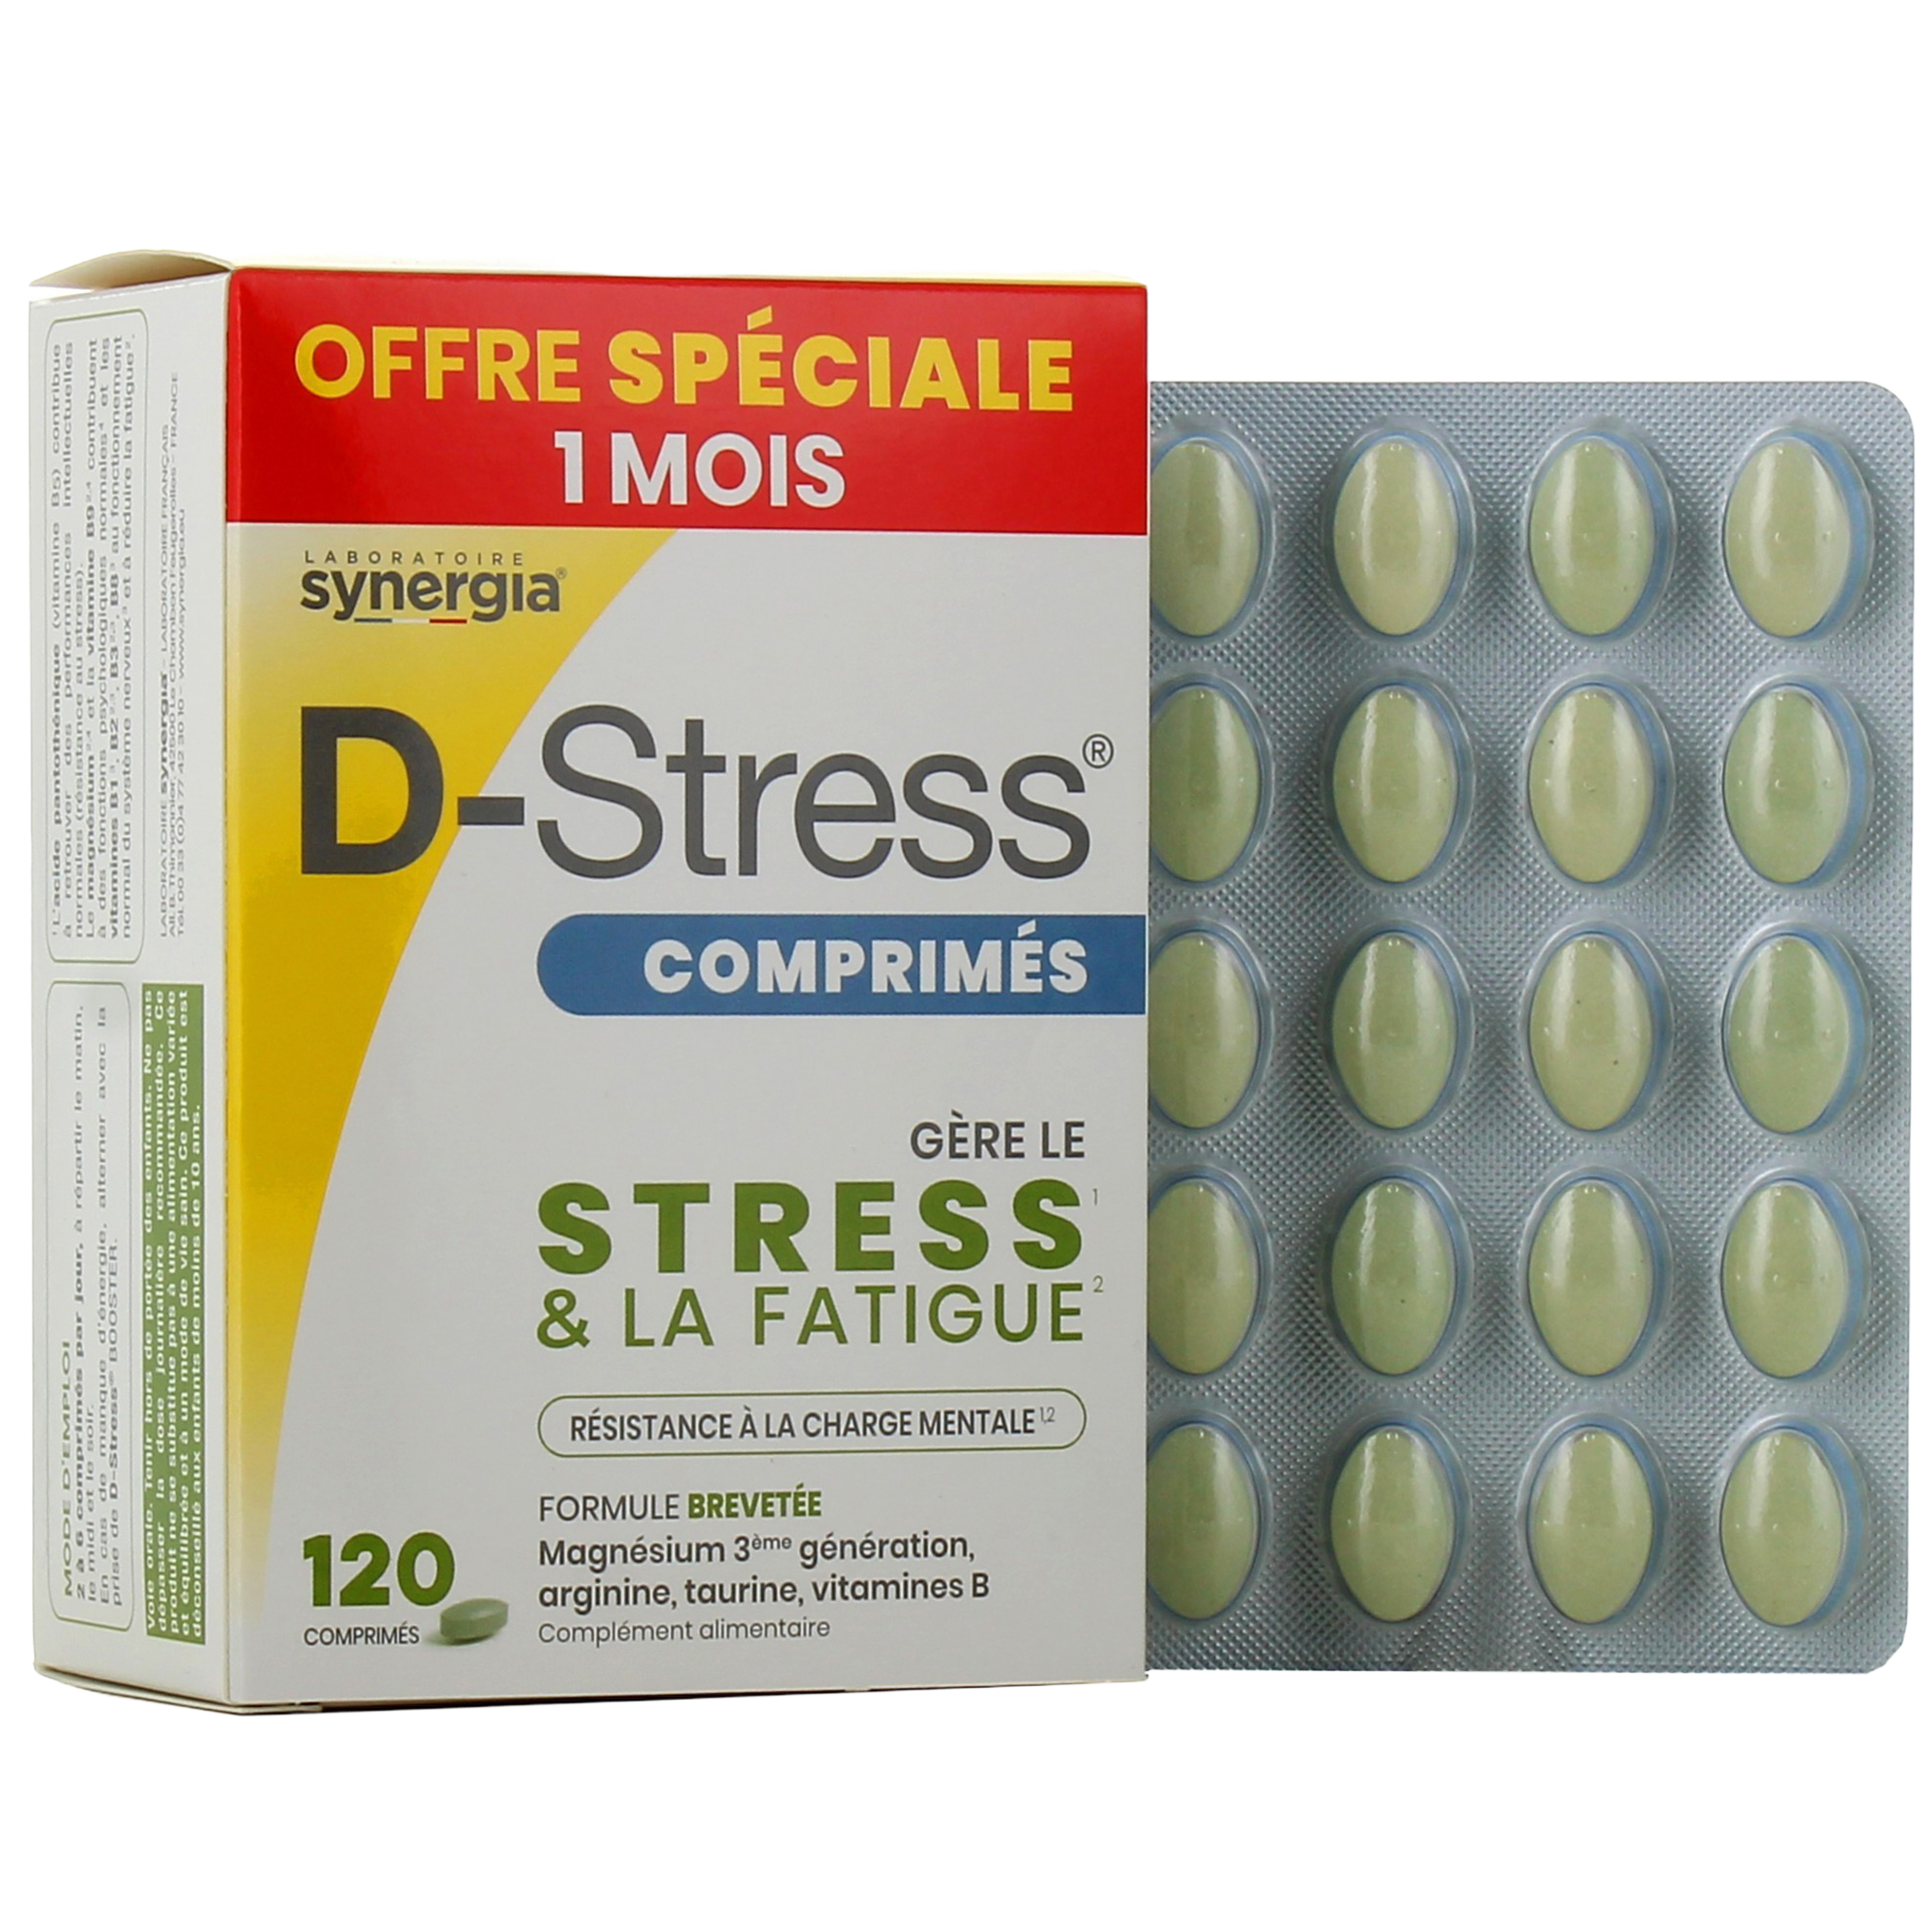 D-Stress Anti-Fatigue 80 comprimés - Vente en ligne!